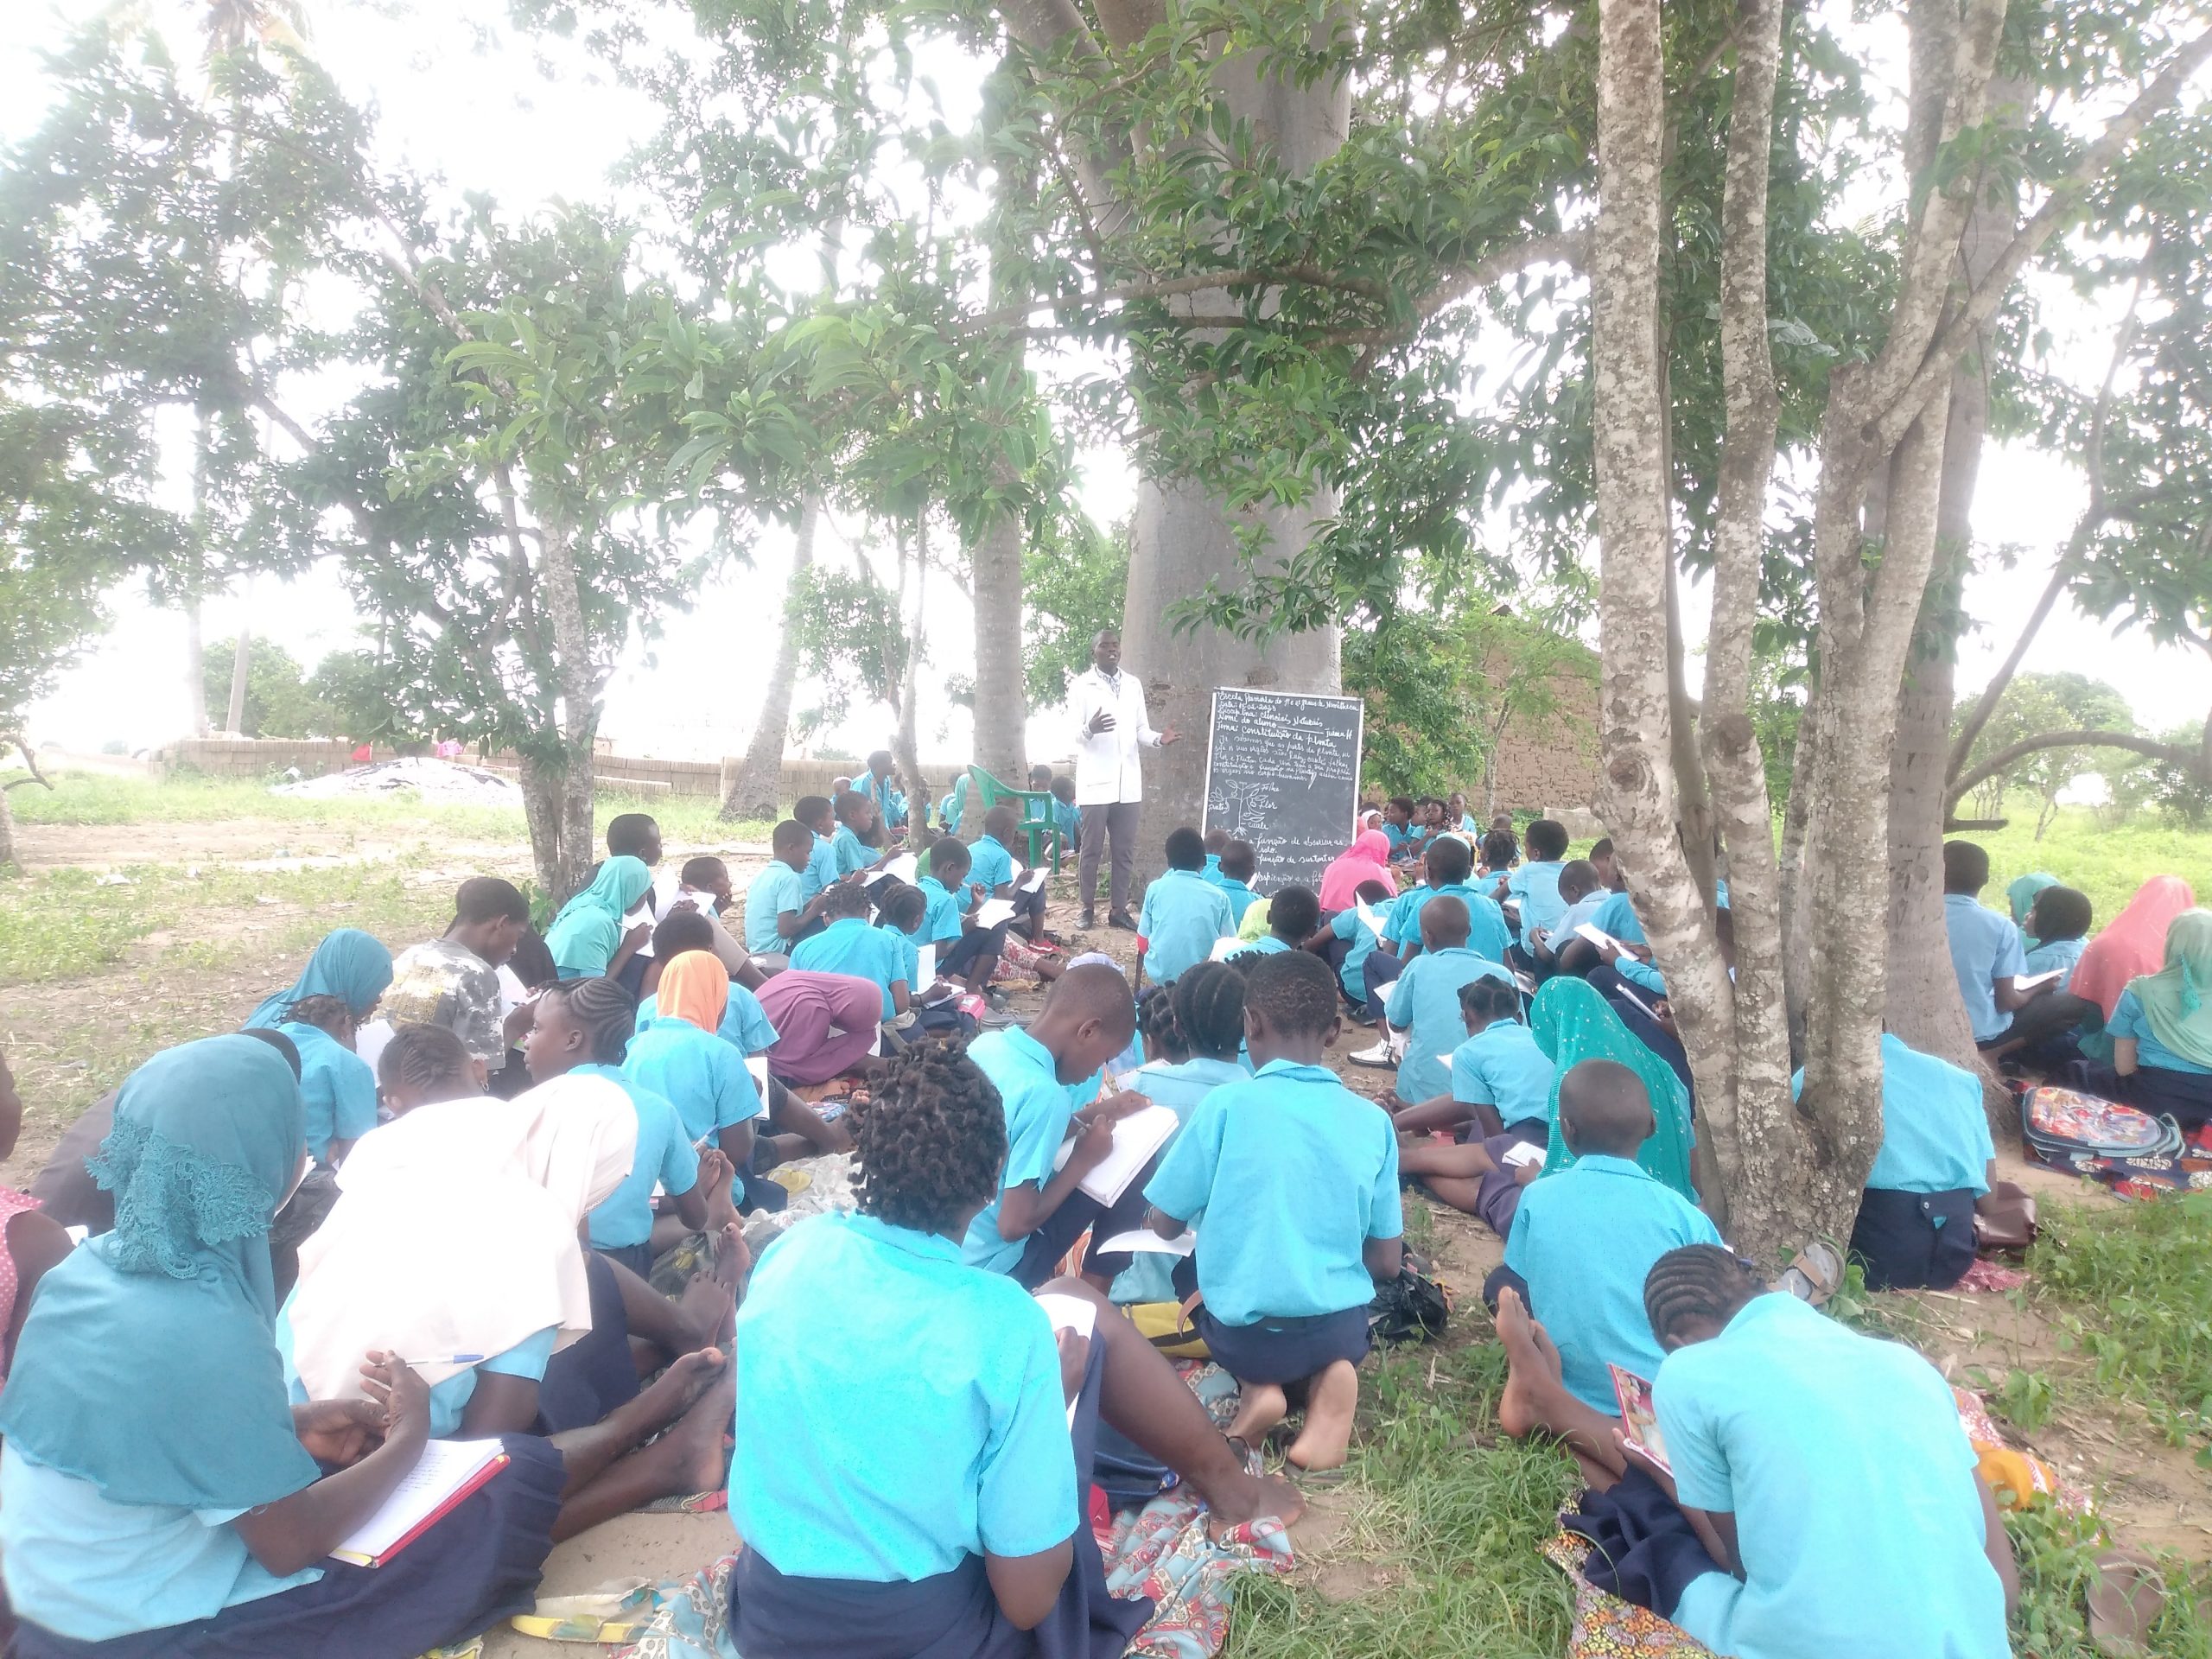 55 turmas estudam ao relento na escola primária completa de Namiteca em Nampula